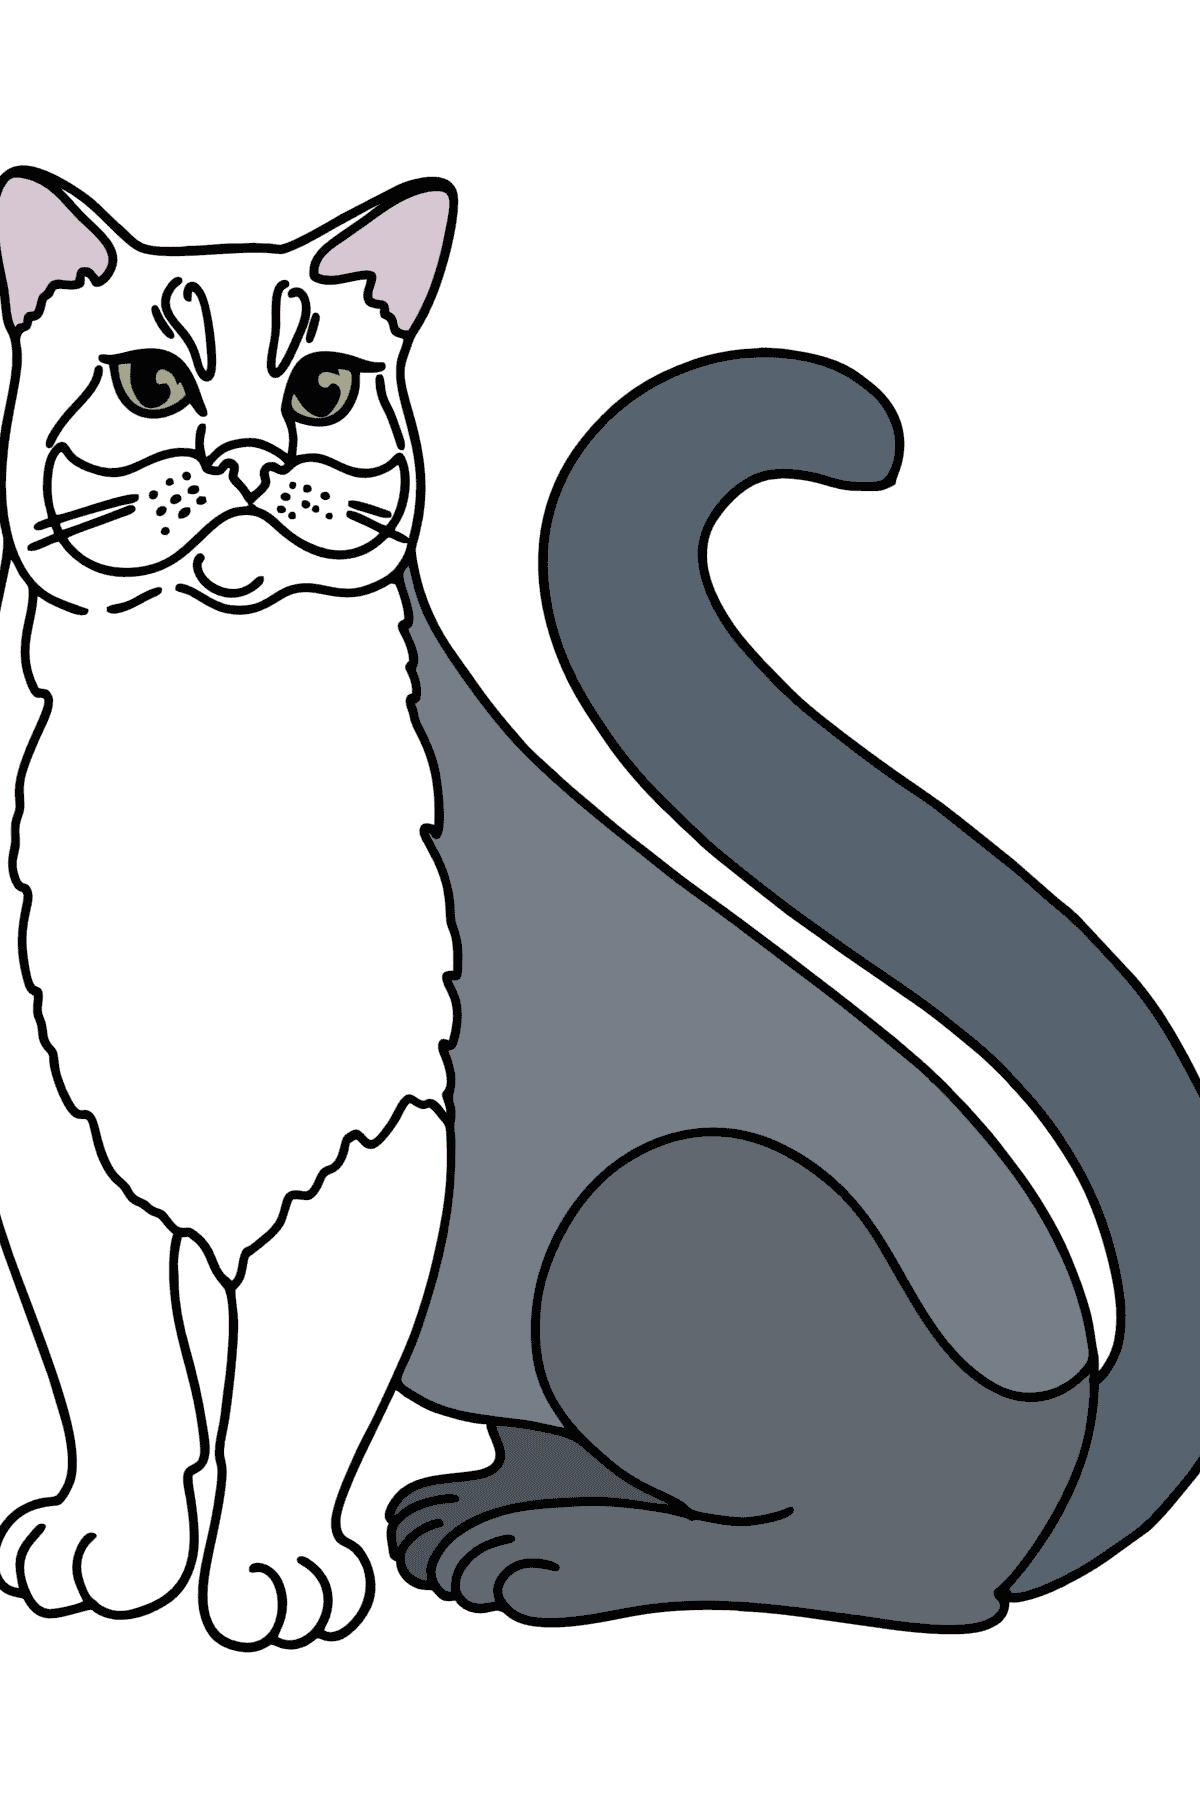 Tegning til fargelegging russisk blå katt - Tegninger til fargelegging for barn